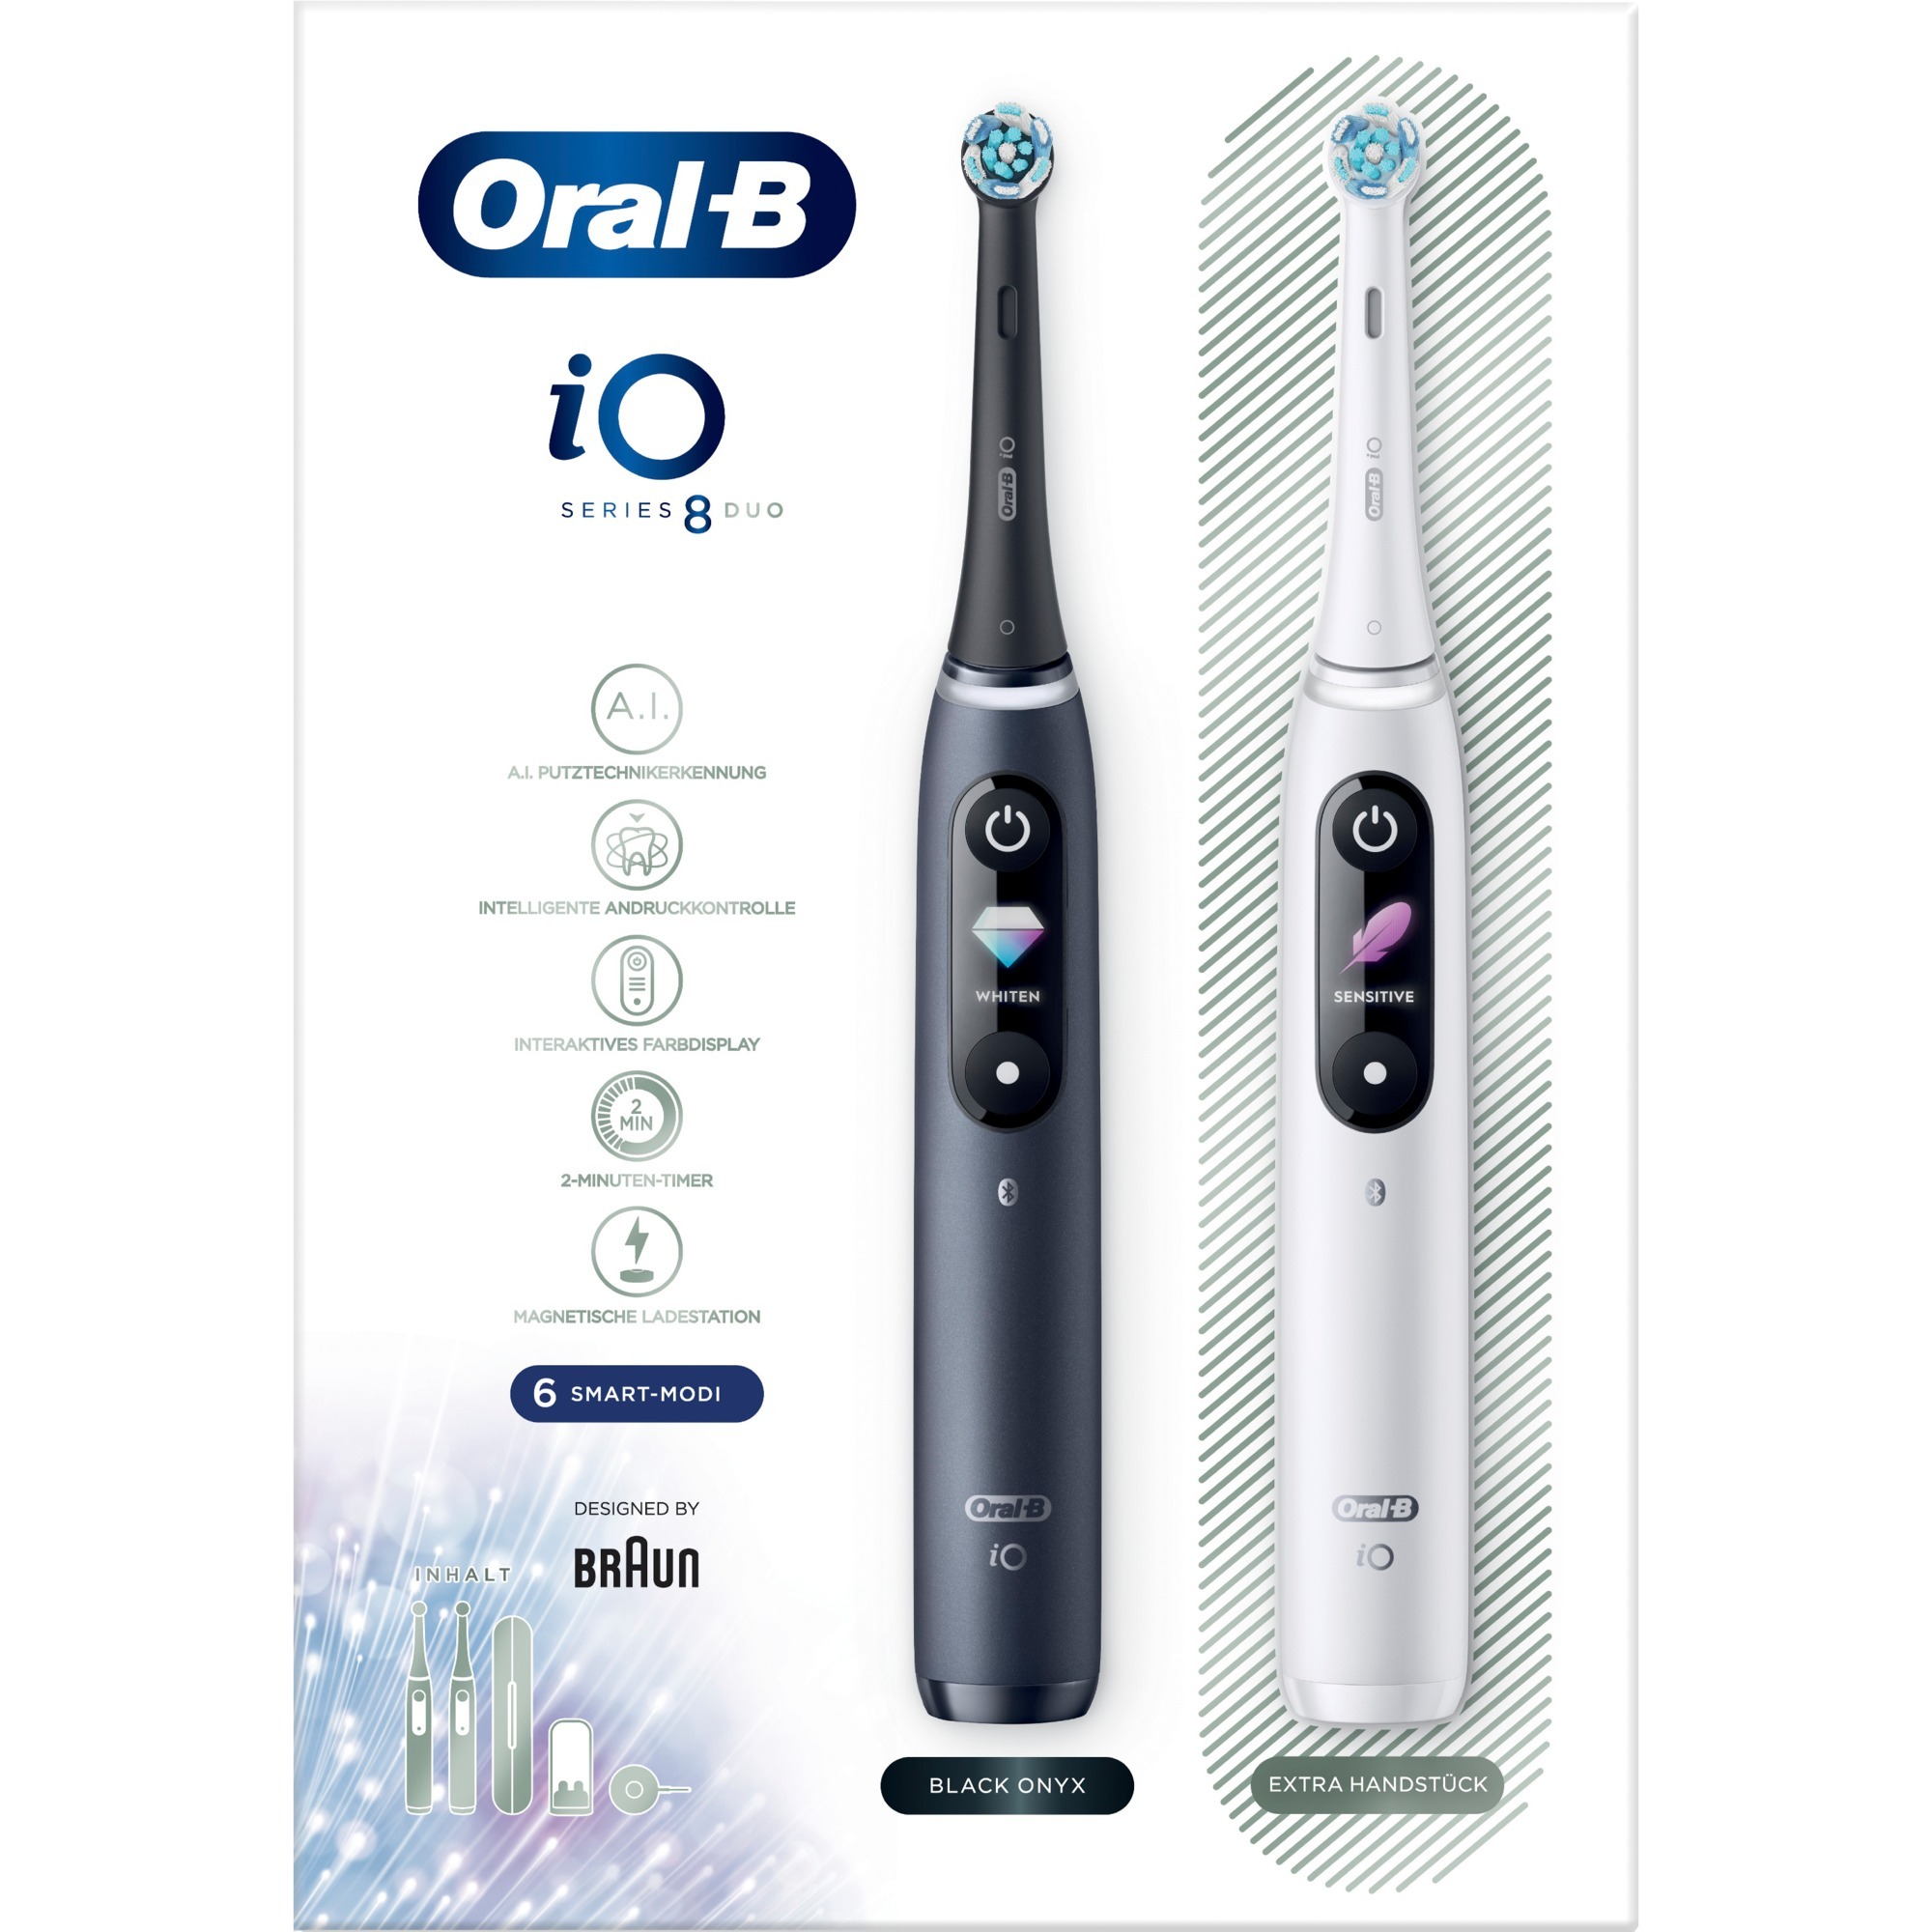 Image of Alternate - Oral-B iO Series 8 Duo, Elektrische Zahnbürste online einkaufen bei Alternate